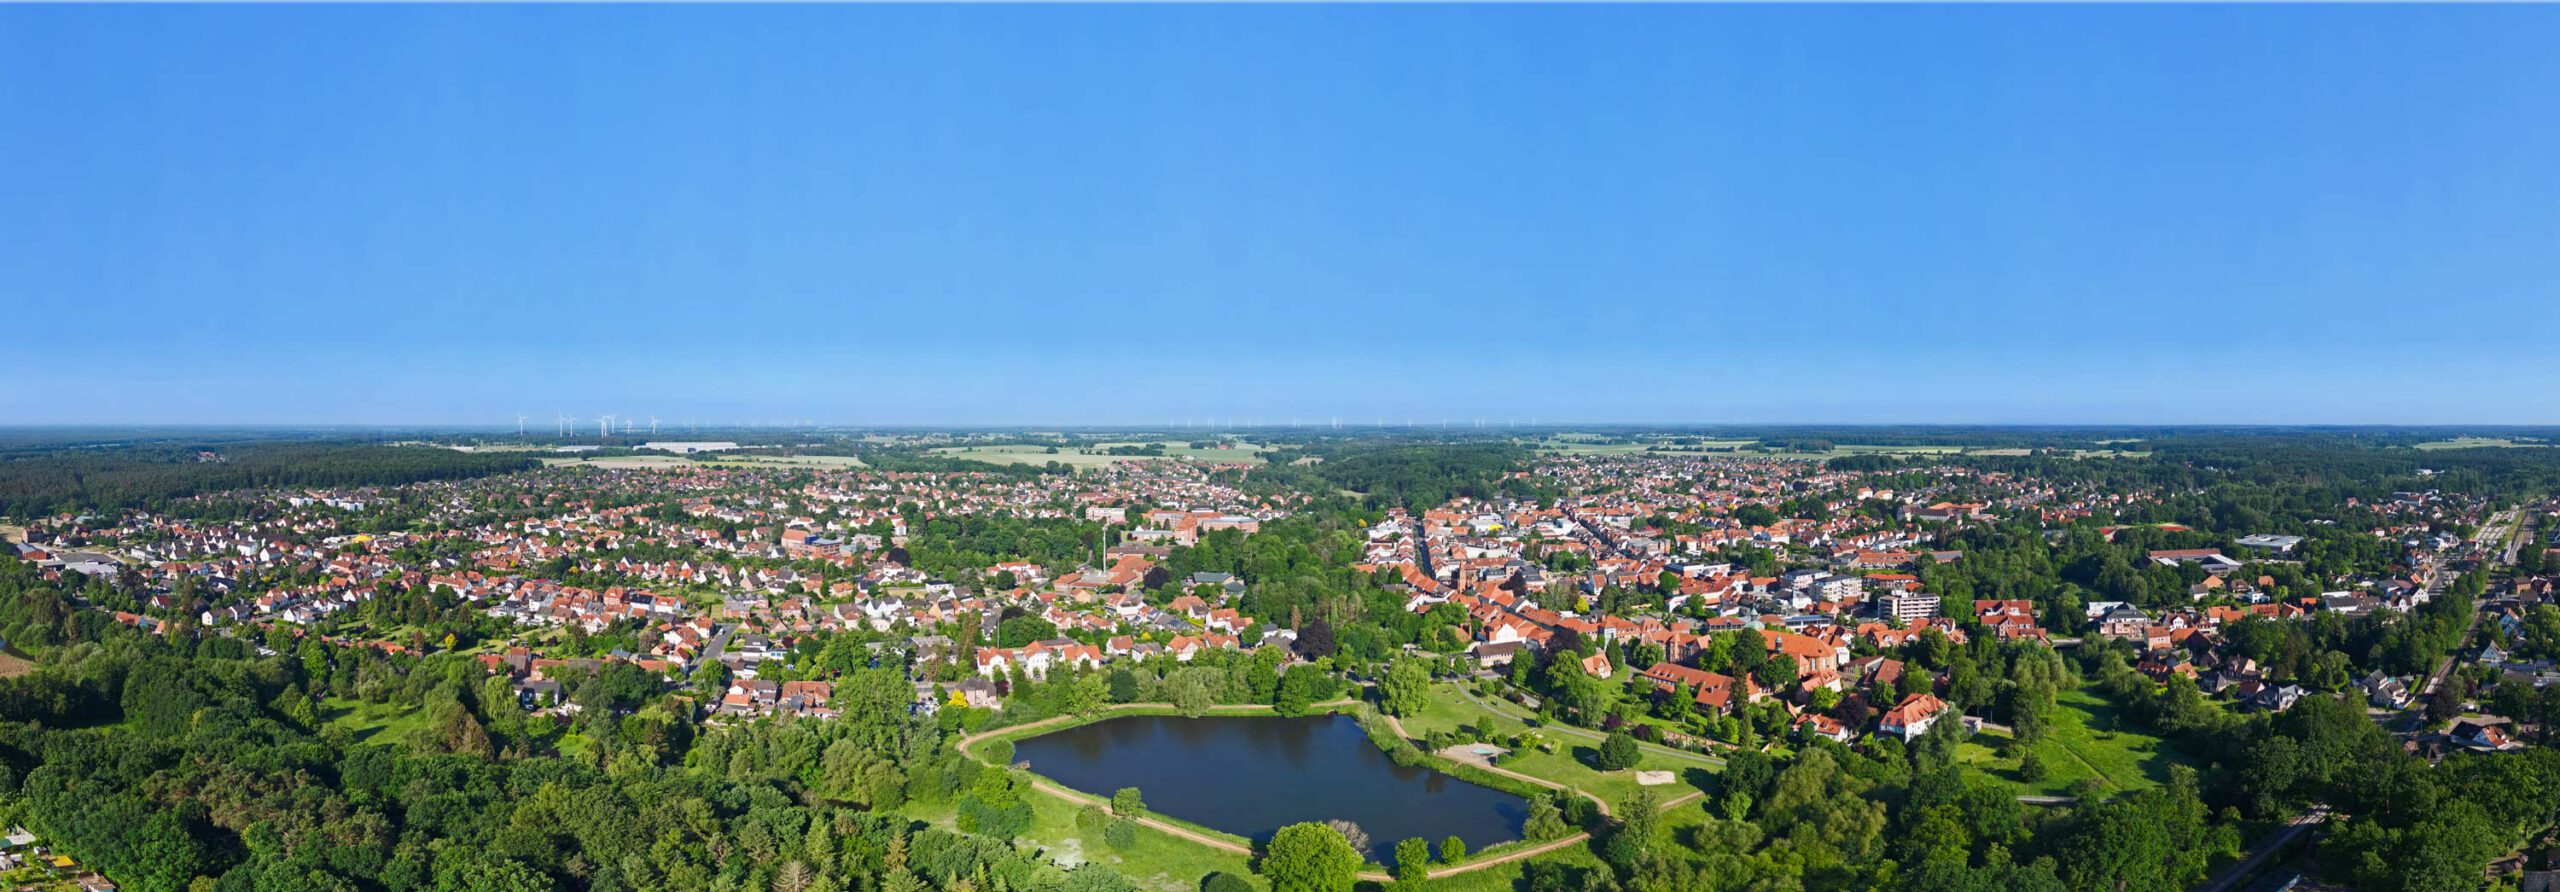 Das Luftbild wurde vom Immobilienmakler Walsrode erstellt nd zeigt Walsrode mit dem Klostersee, dem Kloster und der Innenstadt, Vorbrück und dem Bahnhof.